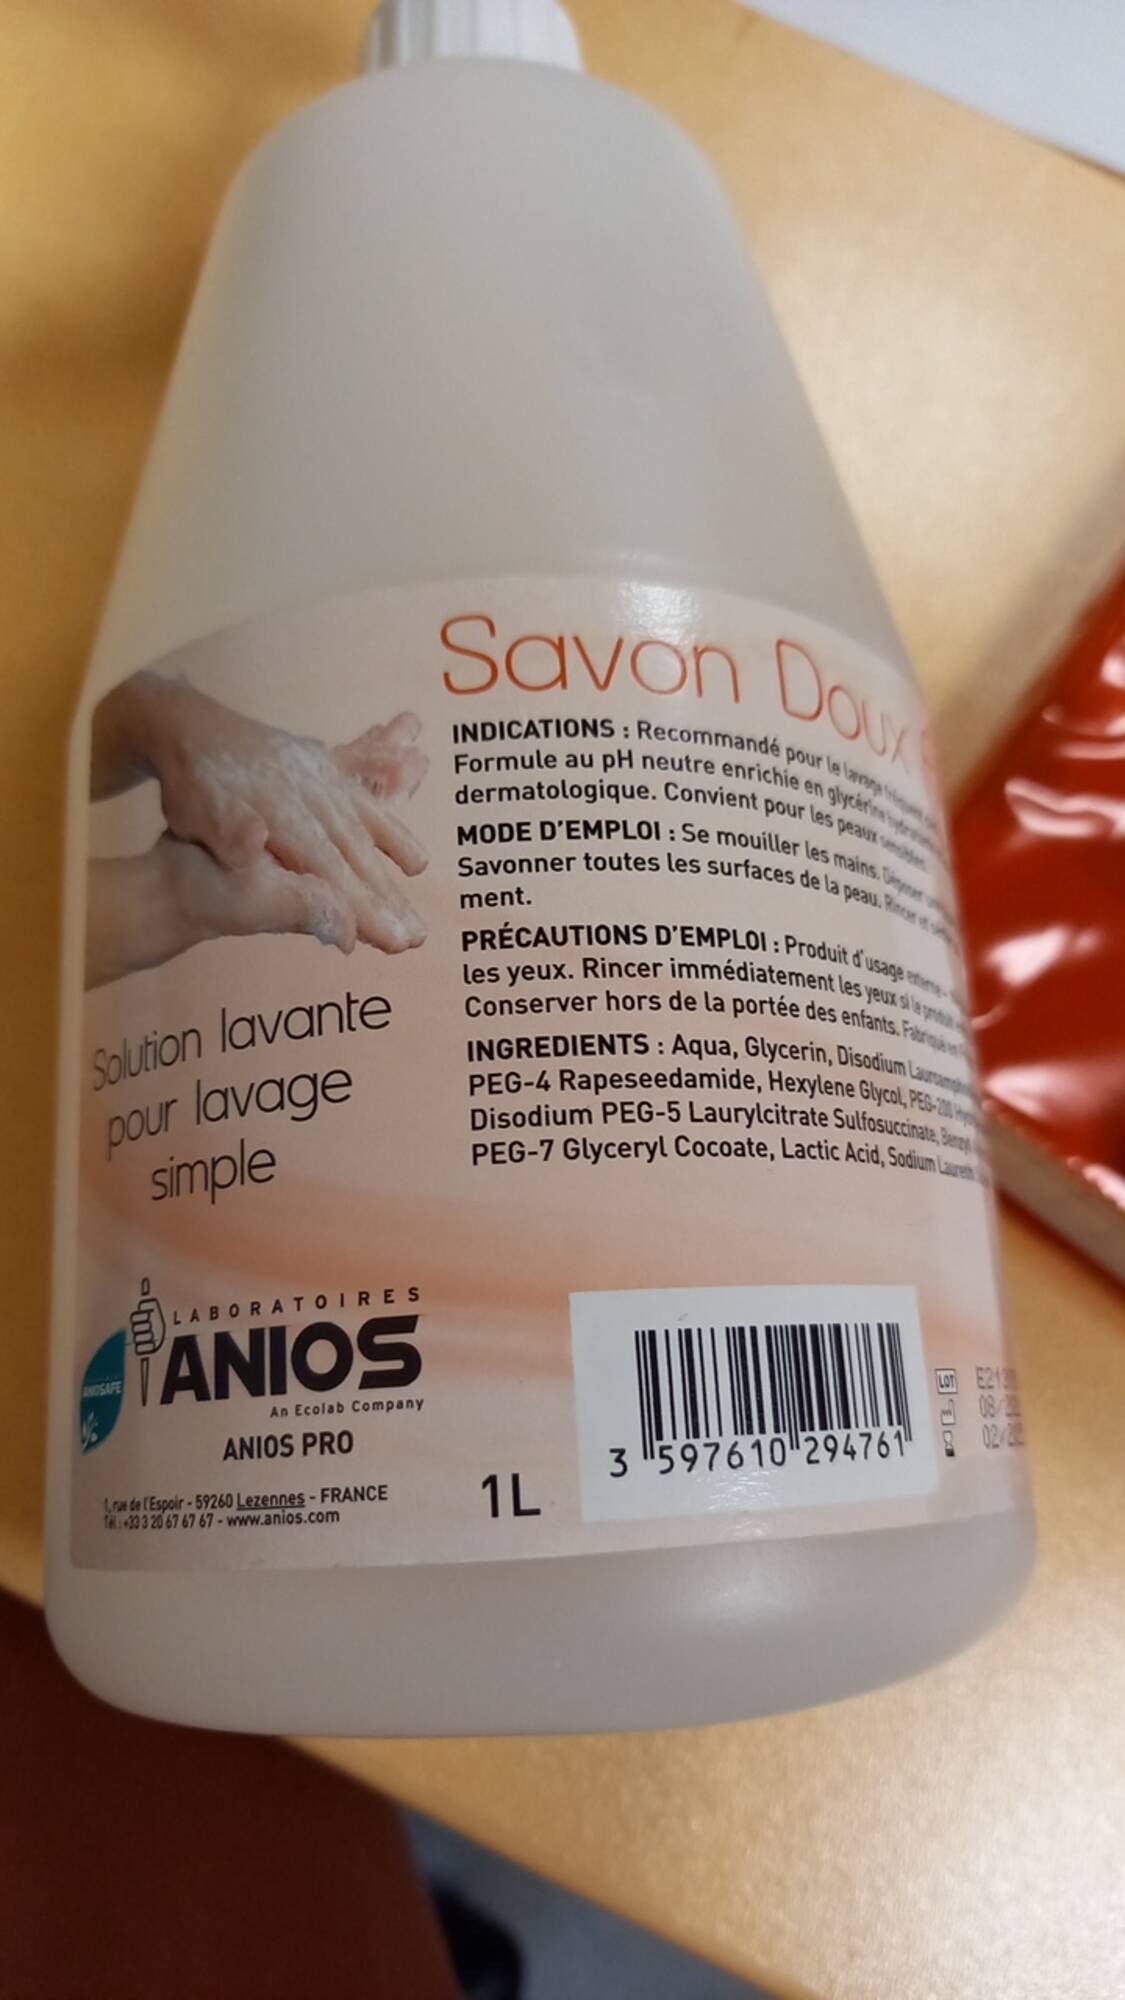 ANIOS - Savon doux aniosafe